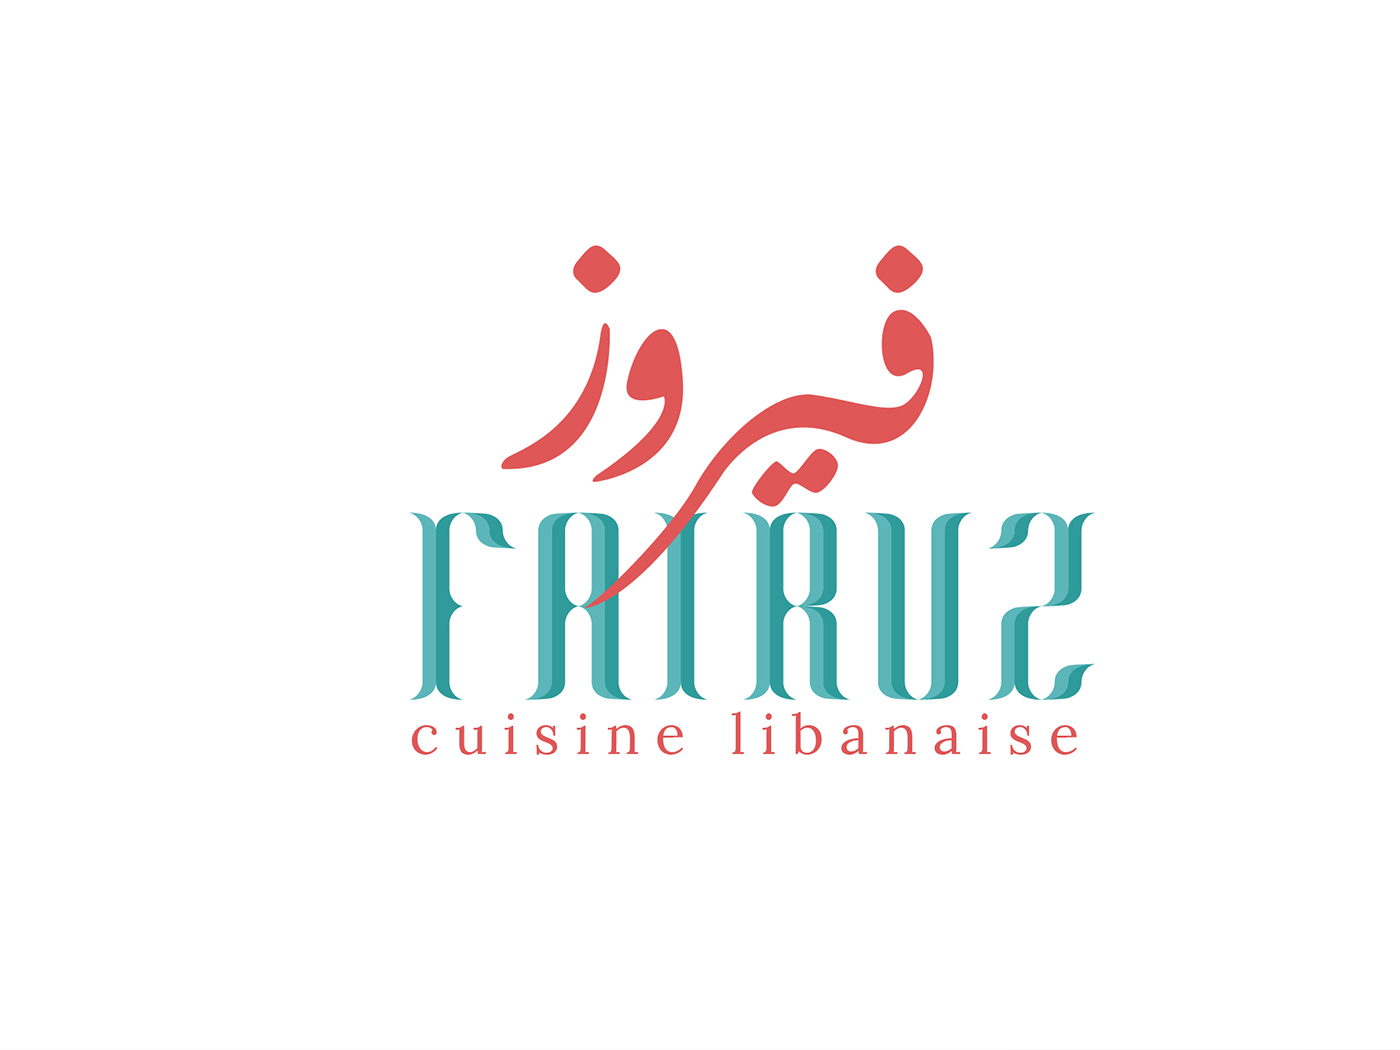 Lebanese cuisine restaurant branding  patterndesign pattern takeaway ILLUSTRATION  RestaurantBranding foodbranding